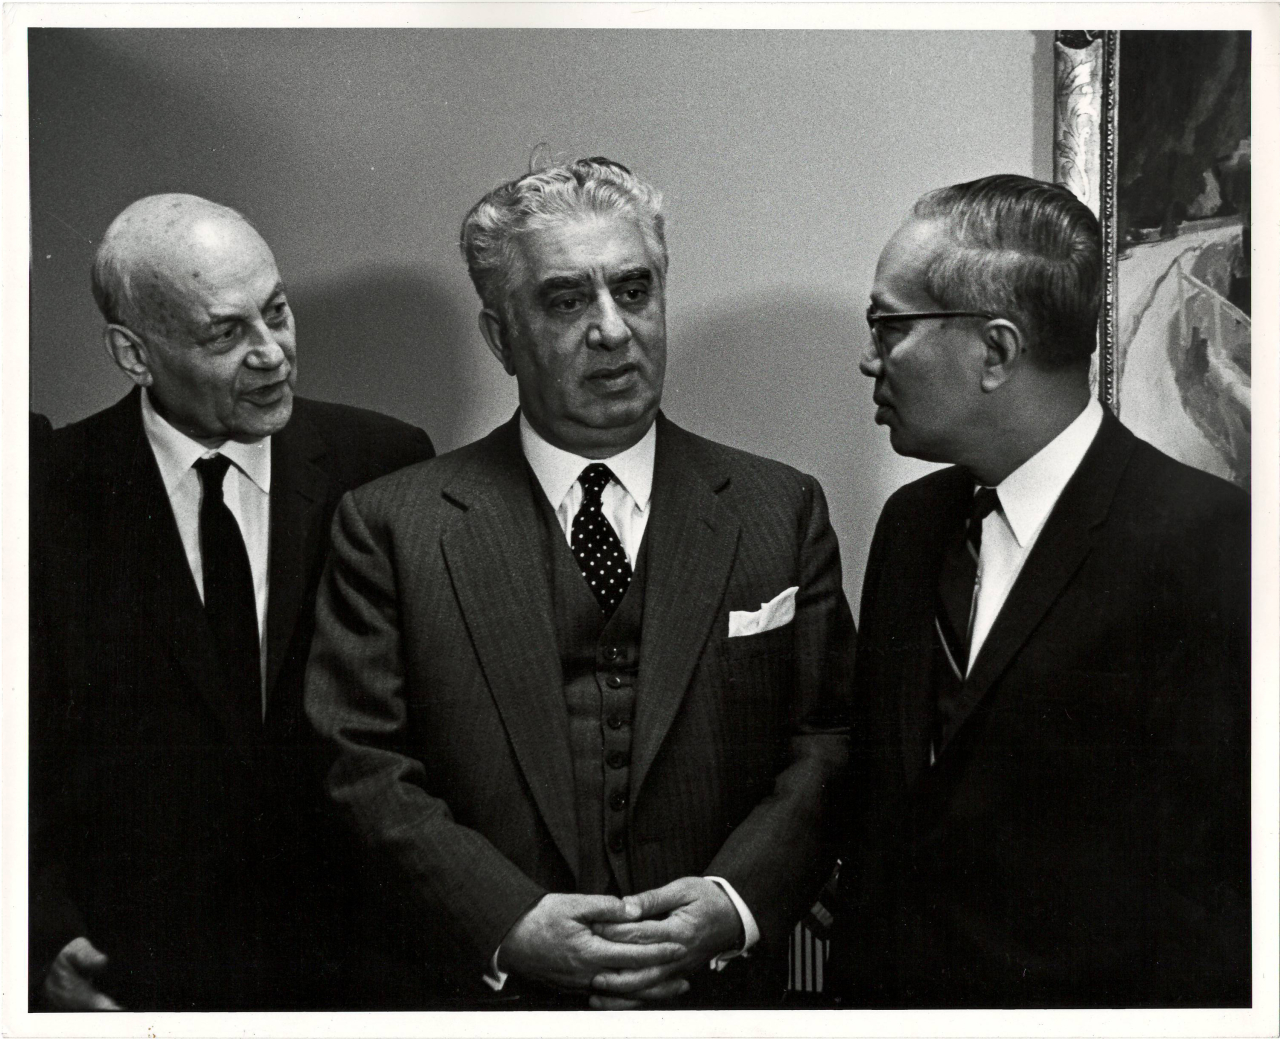 Լուսանկար. Ա. Խաչատրյանը ԱՄՆ-ում իր իմպրեսարիո Զարովիչի  և ՄԱԿ-ի գլխավոր քարտուղար Ու Տանի հետ՝ ՄԱԿ-ի գրասենյակում ընդունելության ժամանակ